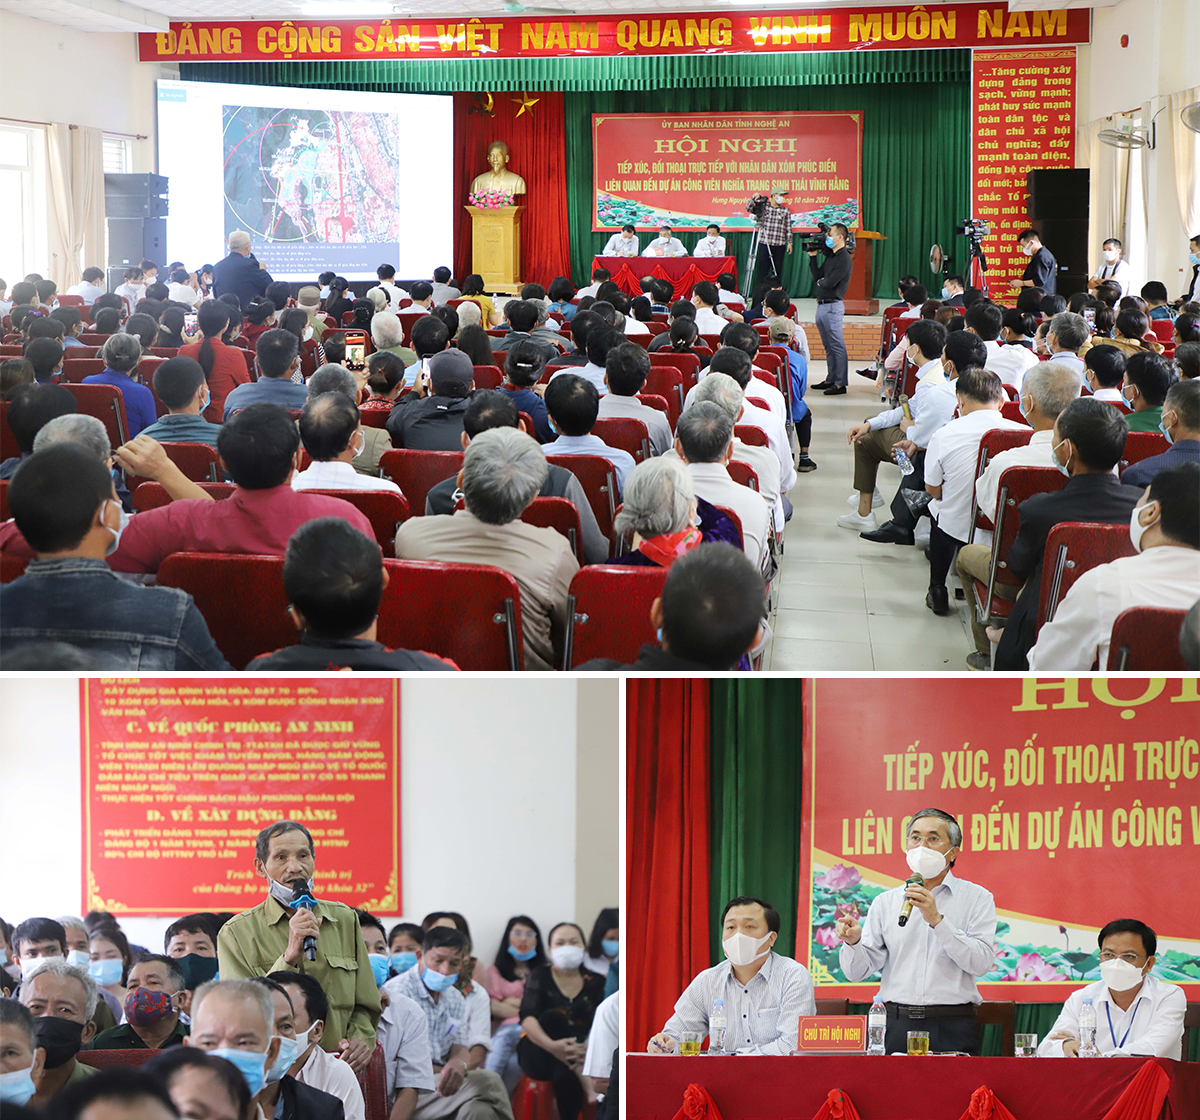 UBND tỉnh Nghệ An tổ chức hội nghị đối thoại, trả lời những kiến nghị của công dân liên quan đến triển khai dự án công viên sinh thái vĩnh hằng tại xã Hưng Tây. Ảnh: PB